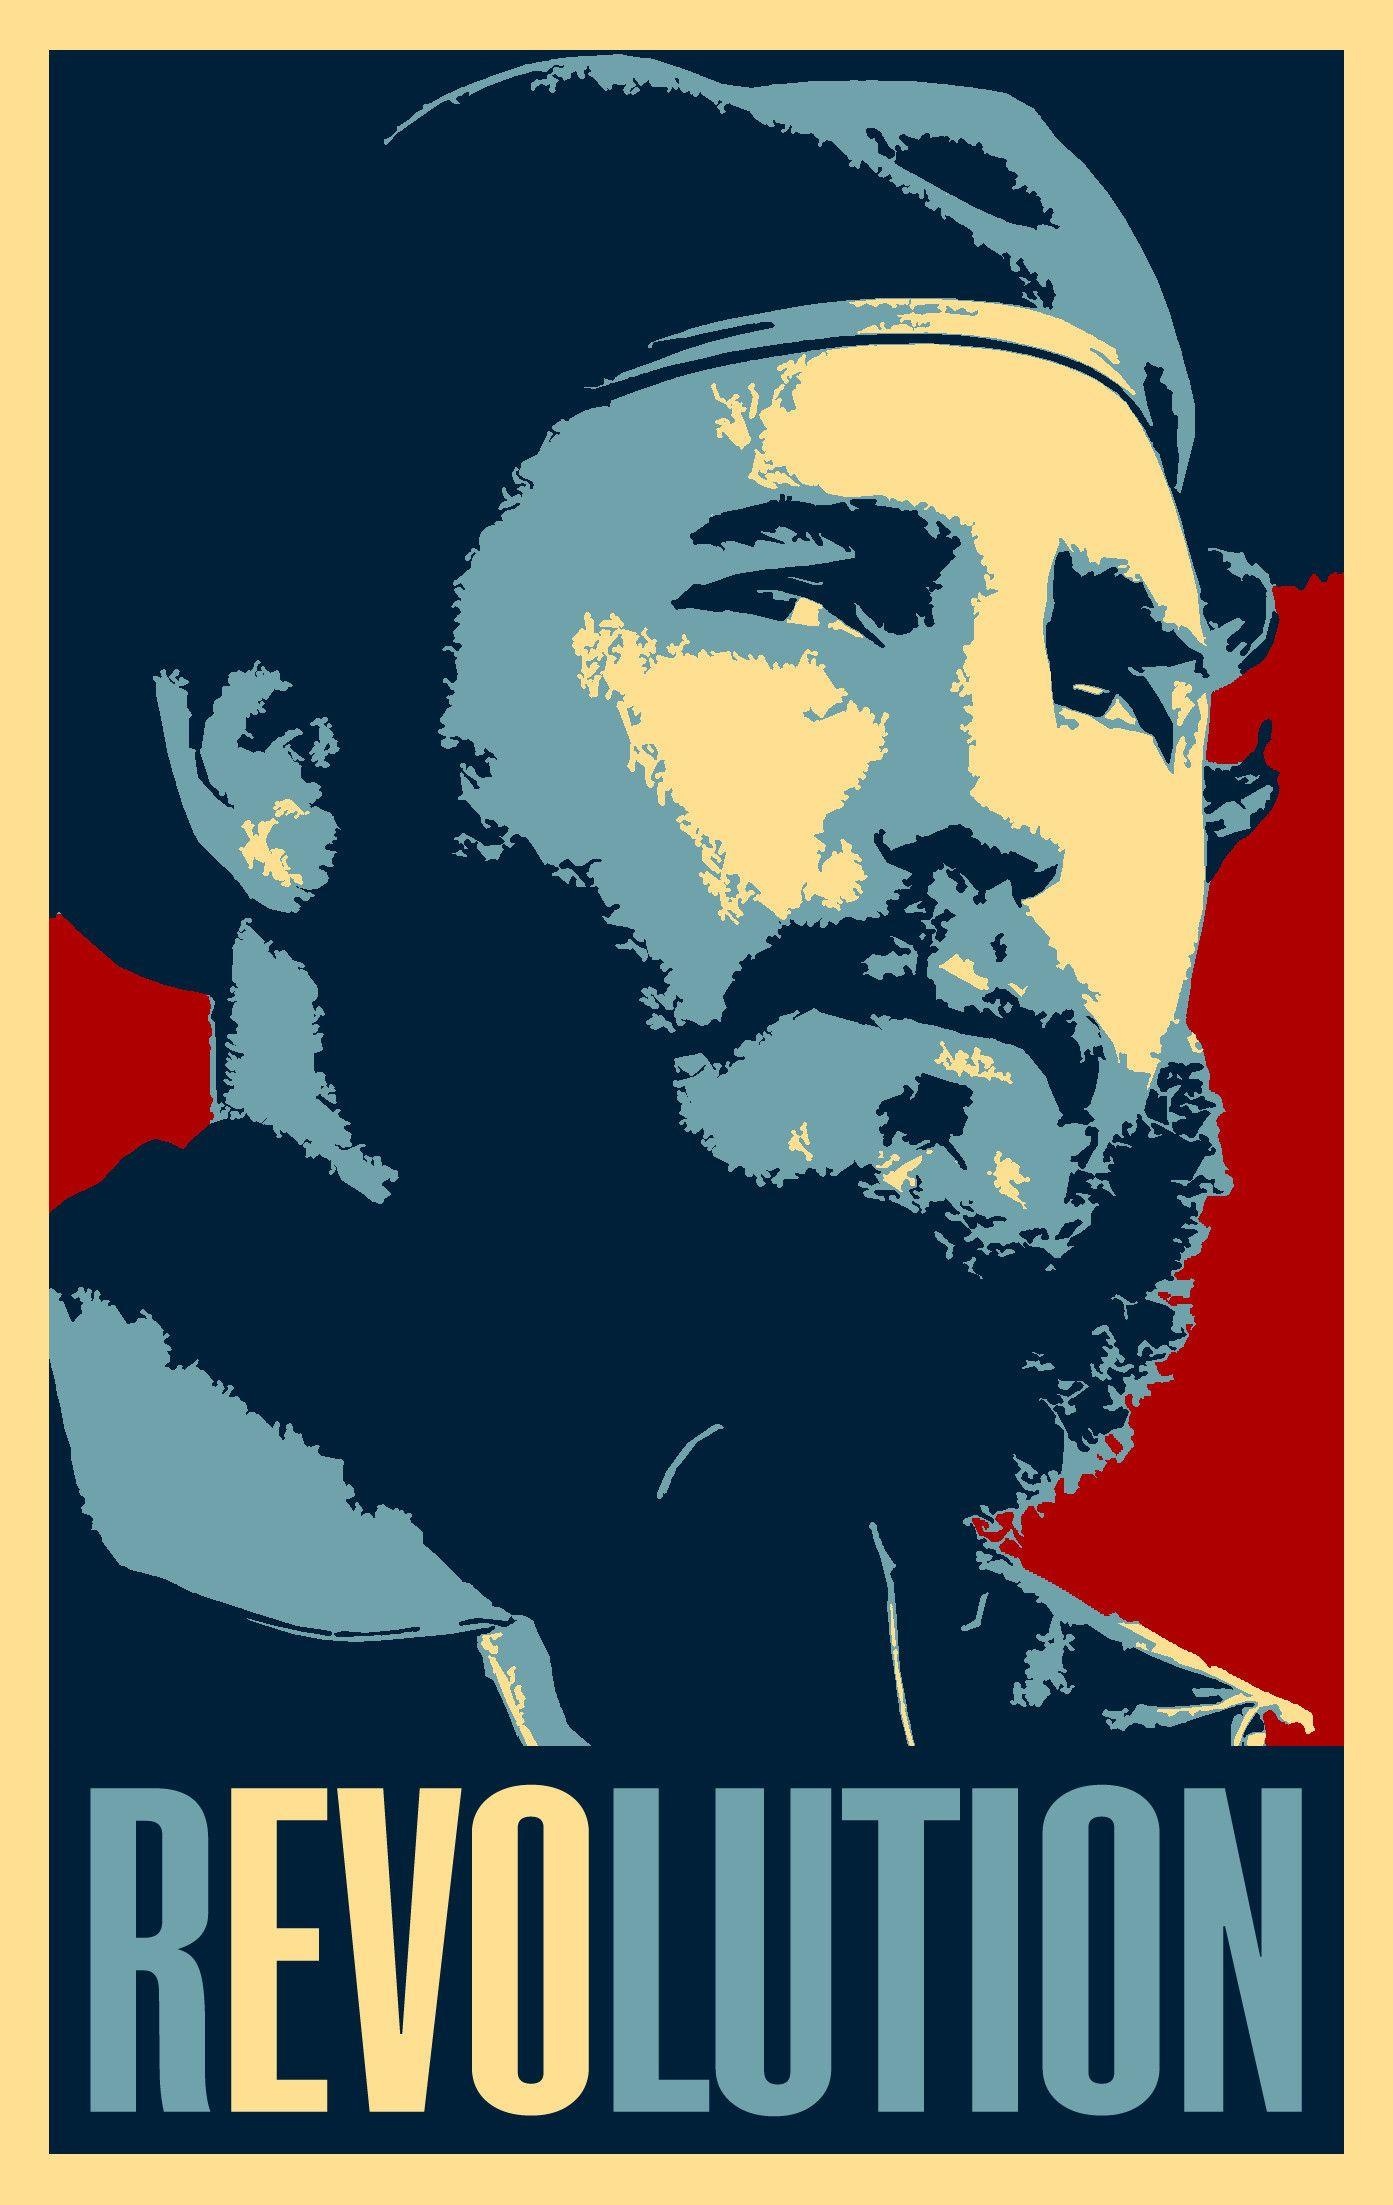 Fidel Castro: Took a key role in the Cuban Revolution, Comandante en Jefe. 1400x2210 HD Wallpaper.